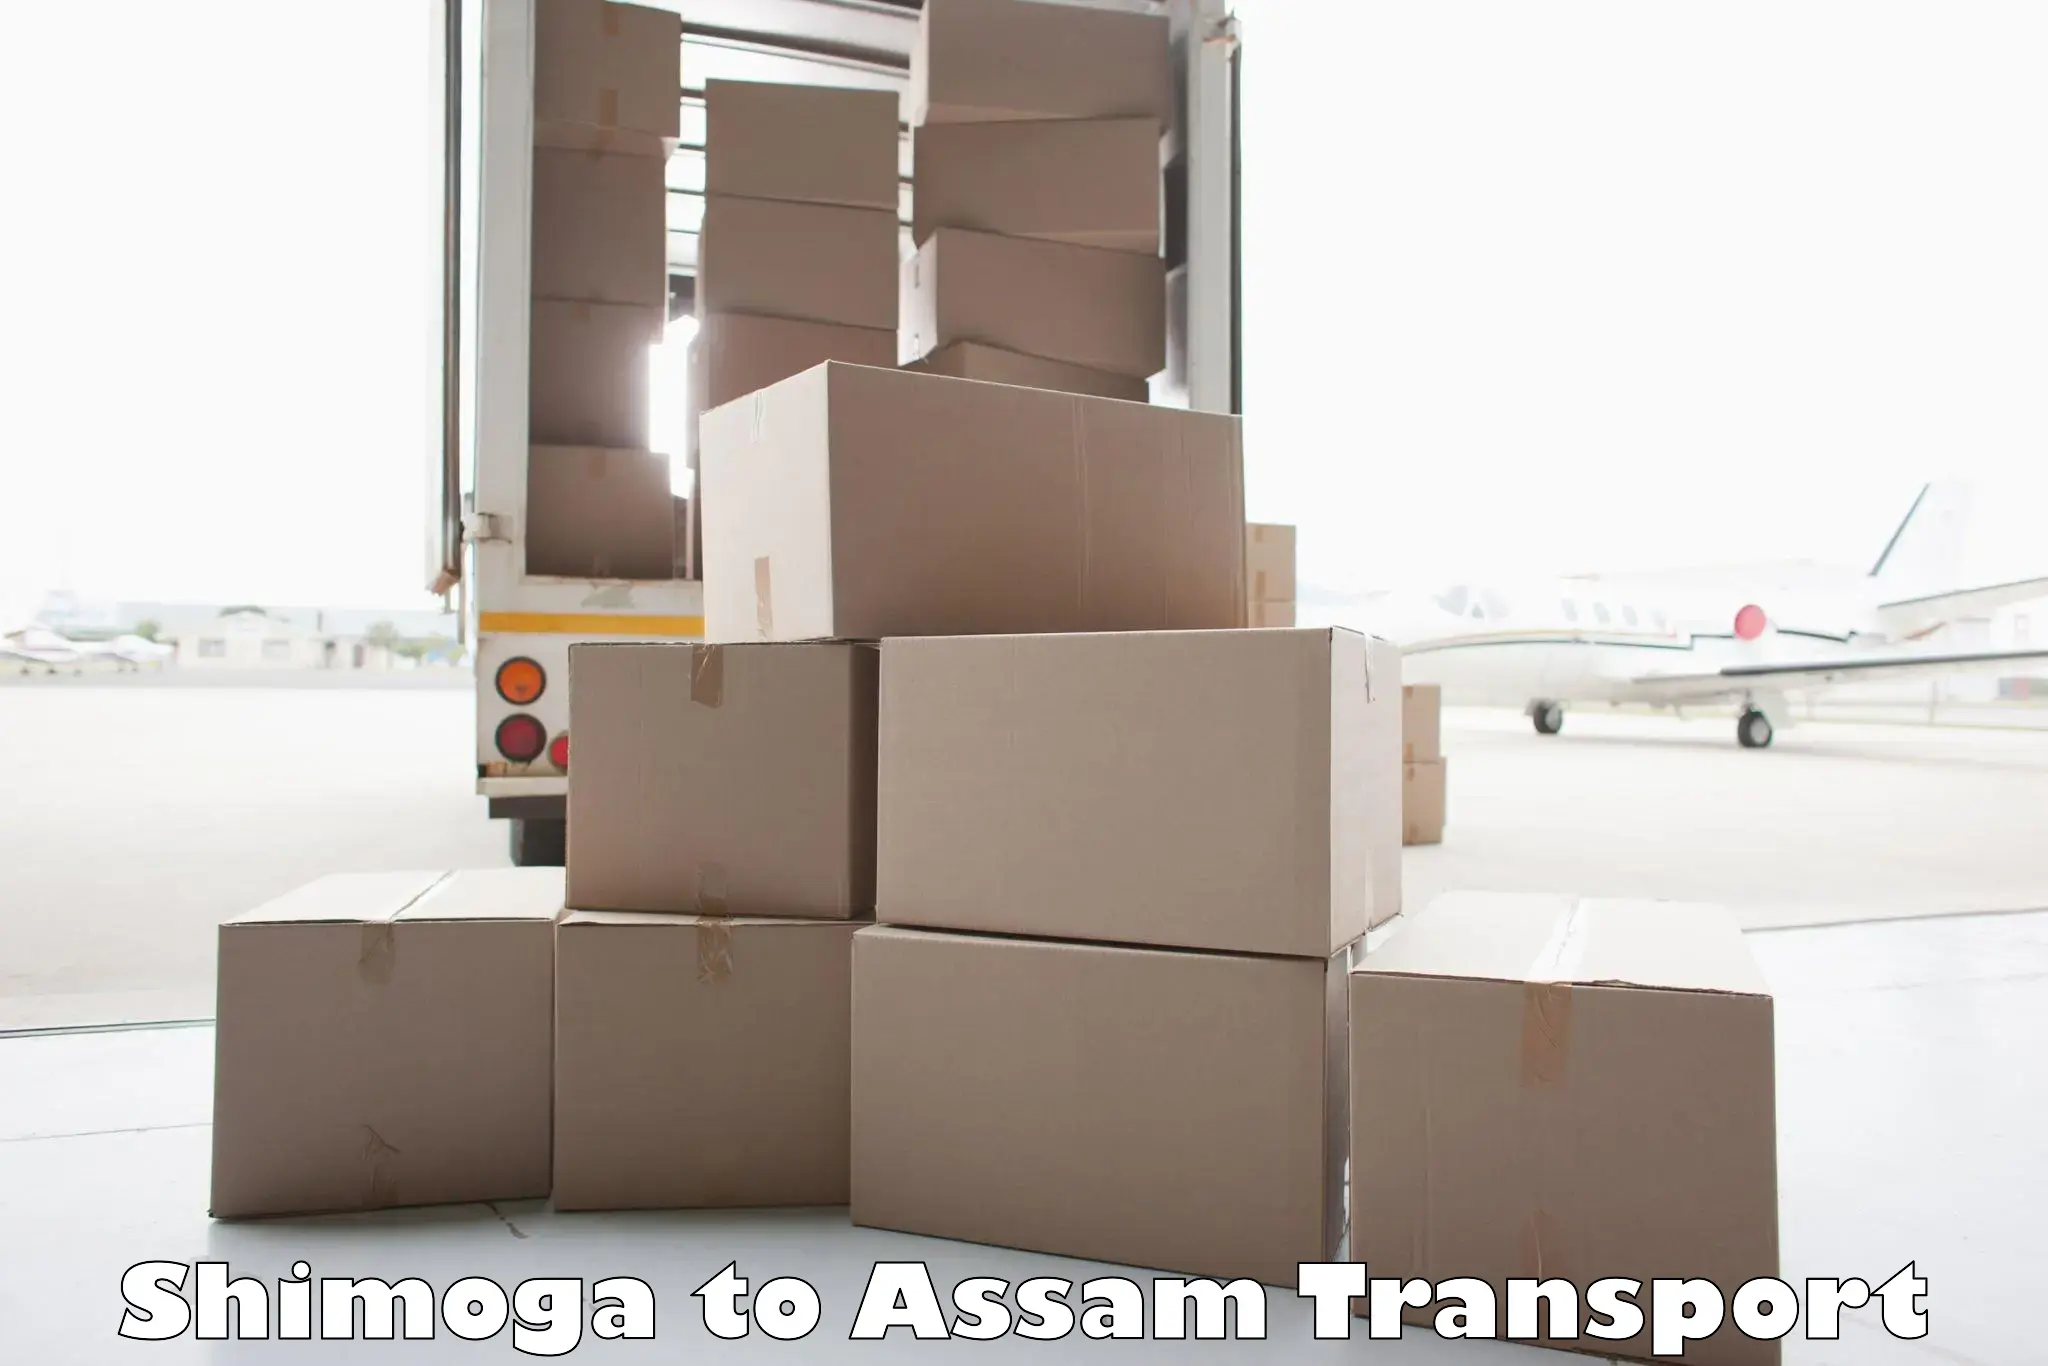 Online transport service Shimoga to Assam